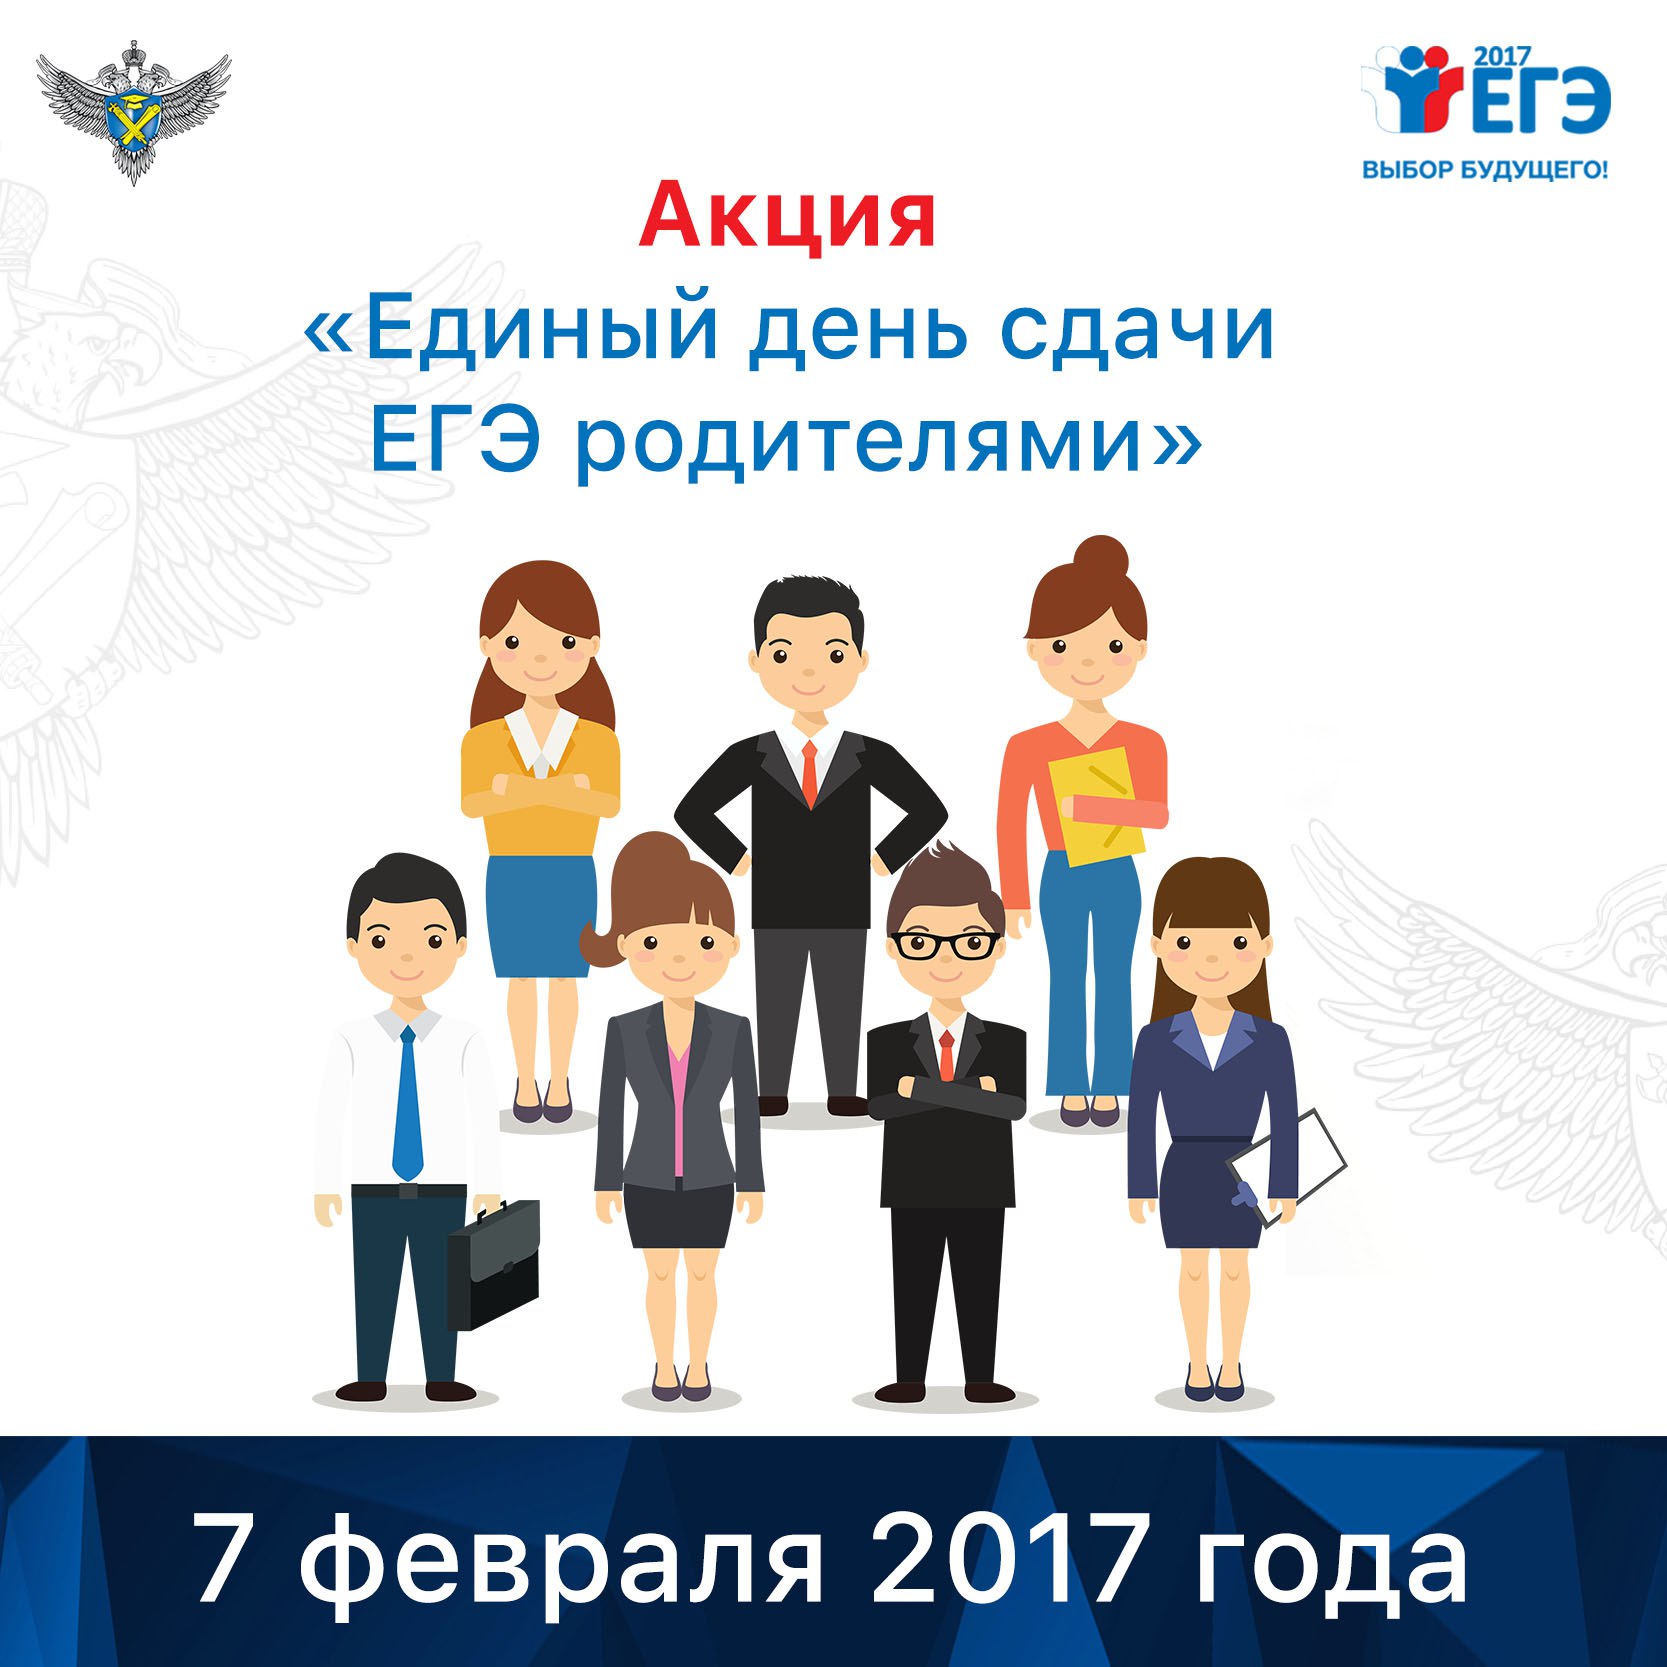 7 февраля в Кемеровской области пройдет Всероссийская акция «Единый день сдачи ЕГЭ родителями»